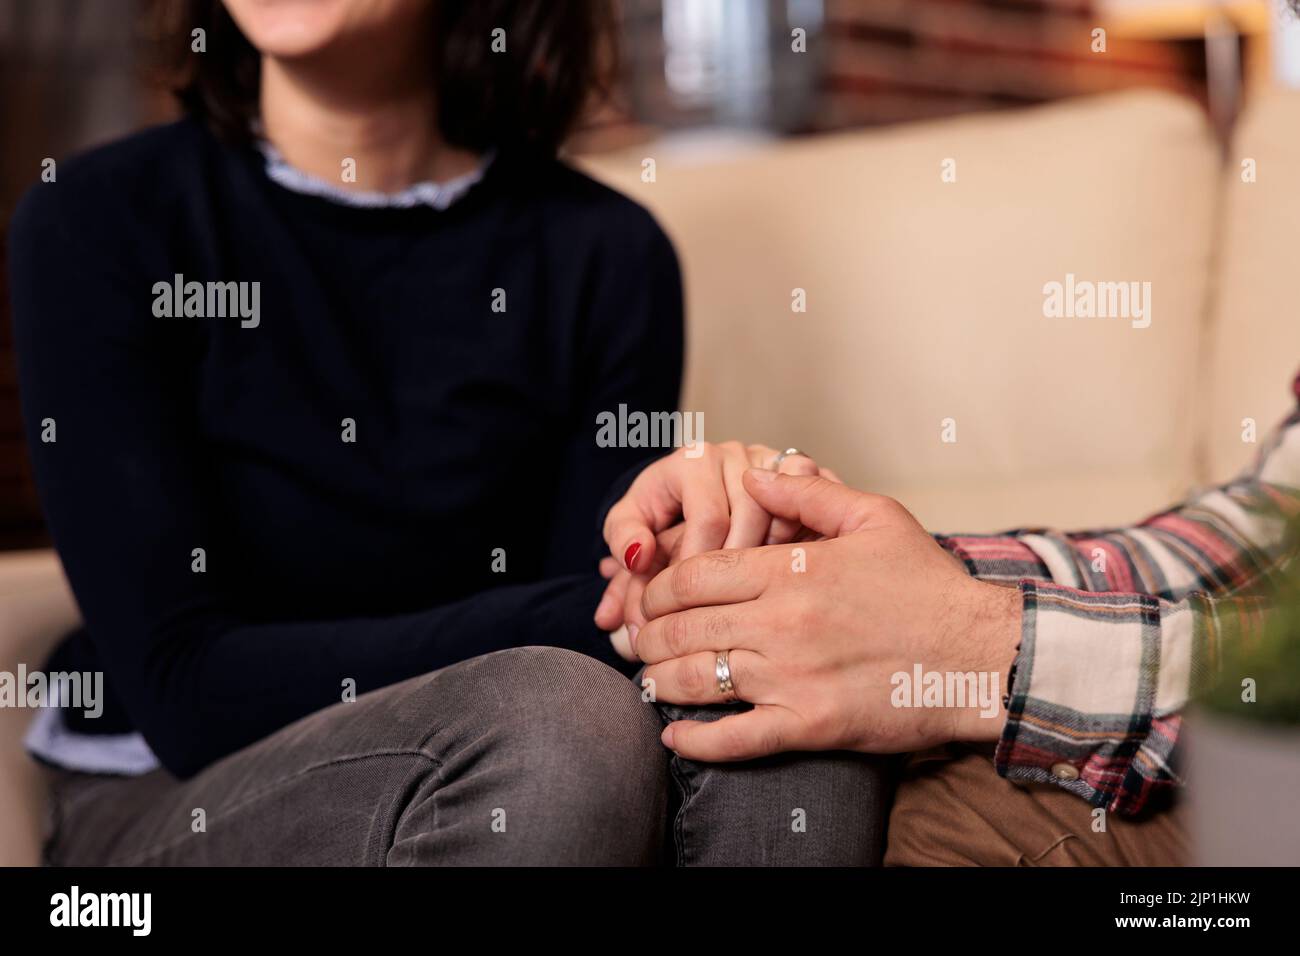 Ehemann und Ehefrau halten sich die Hände, nachdem sie den Ehekonflikt mit Hilfe des Couselors bei der Therapiesitzung gelöst haben. Glückliches Paar, das sich bei der Beziehungsabstimmung im Amt wohlfühlt. Stockfoto